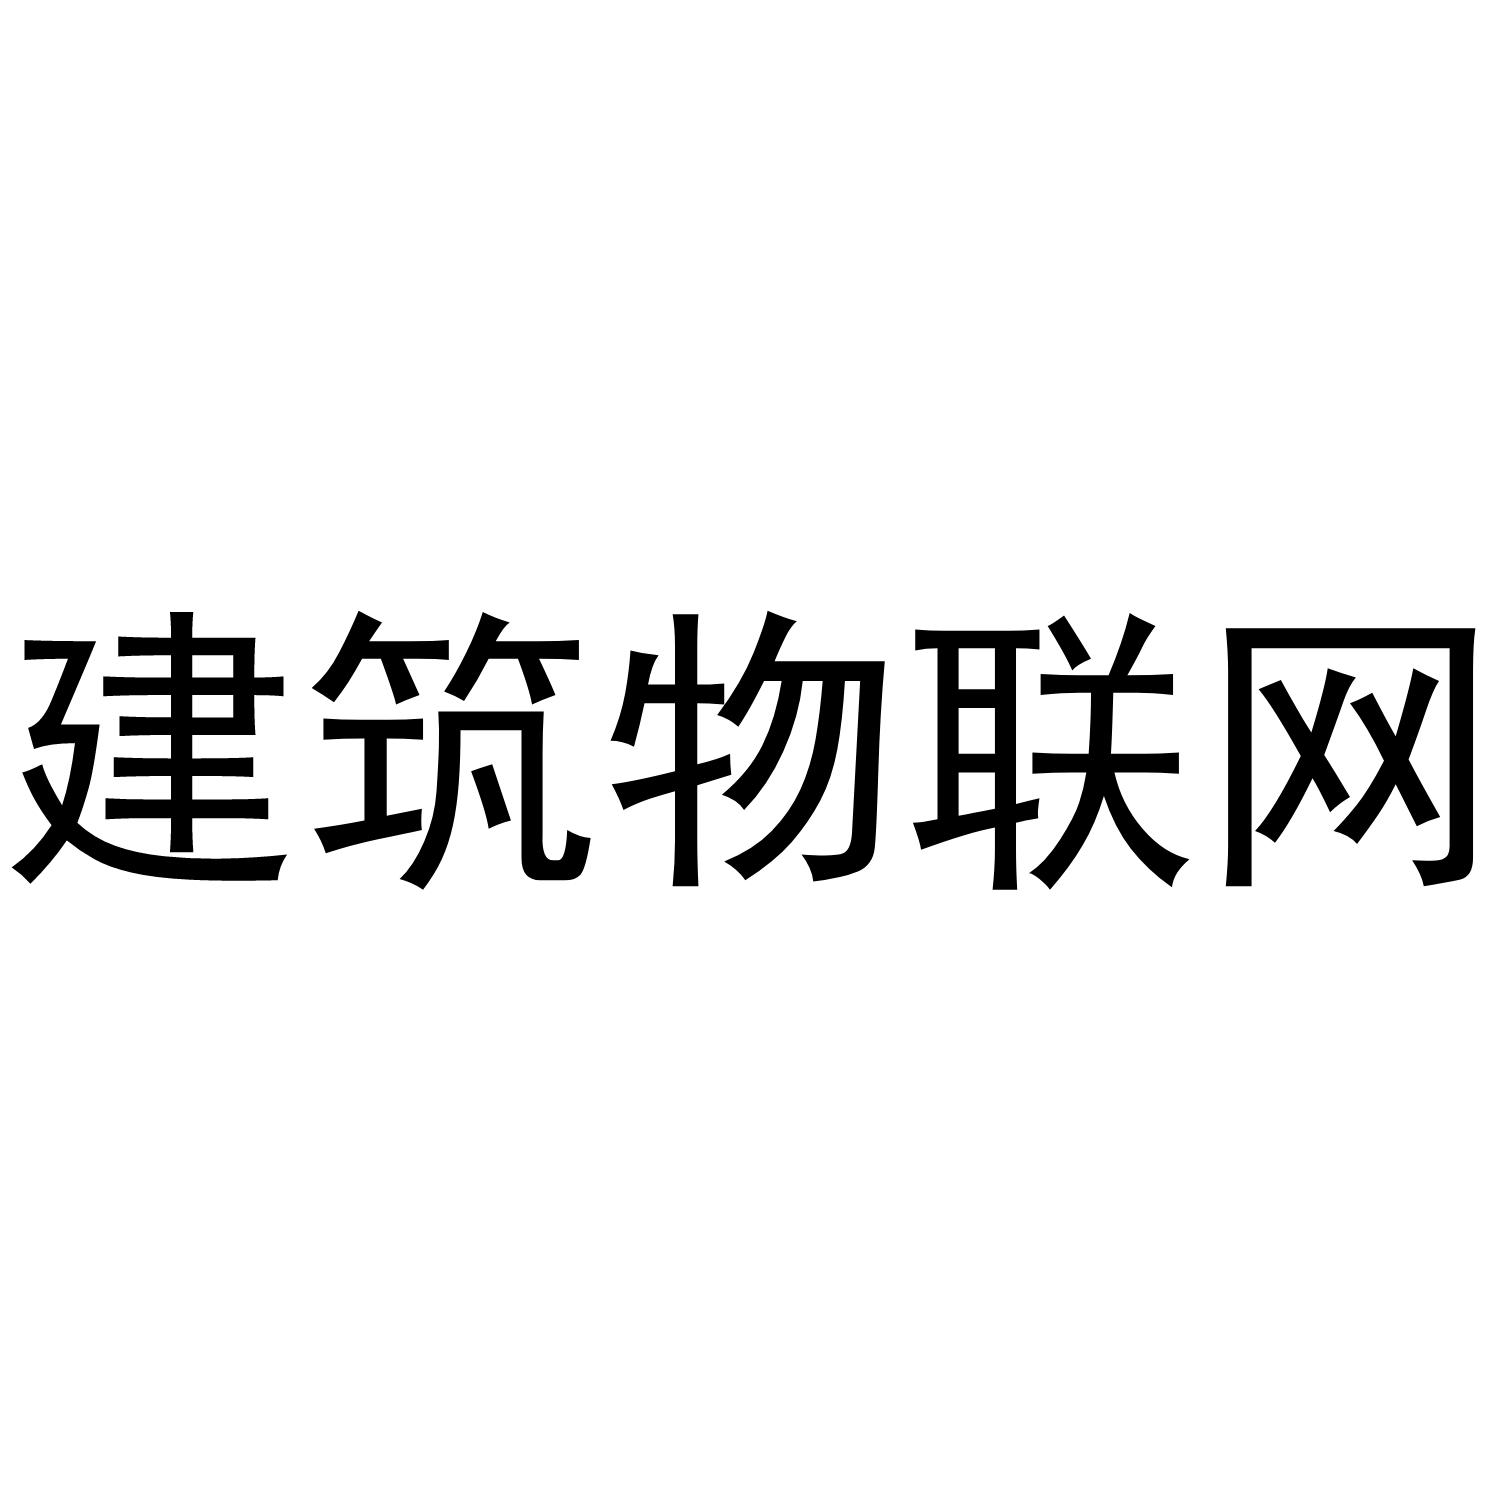 商标文字建筑物联网,商标申请人上海卜米物联网技术有限公司的商标